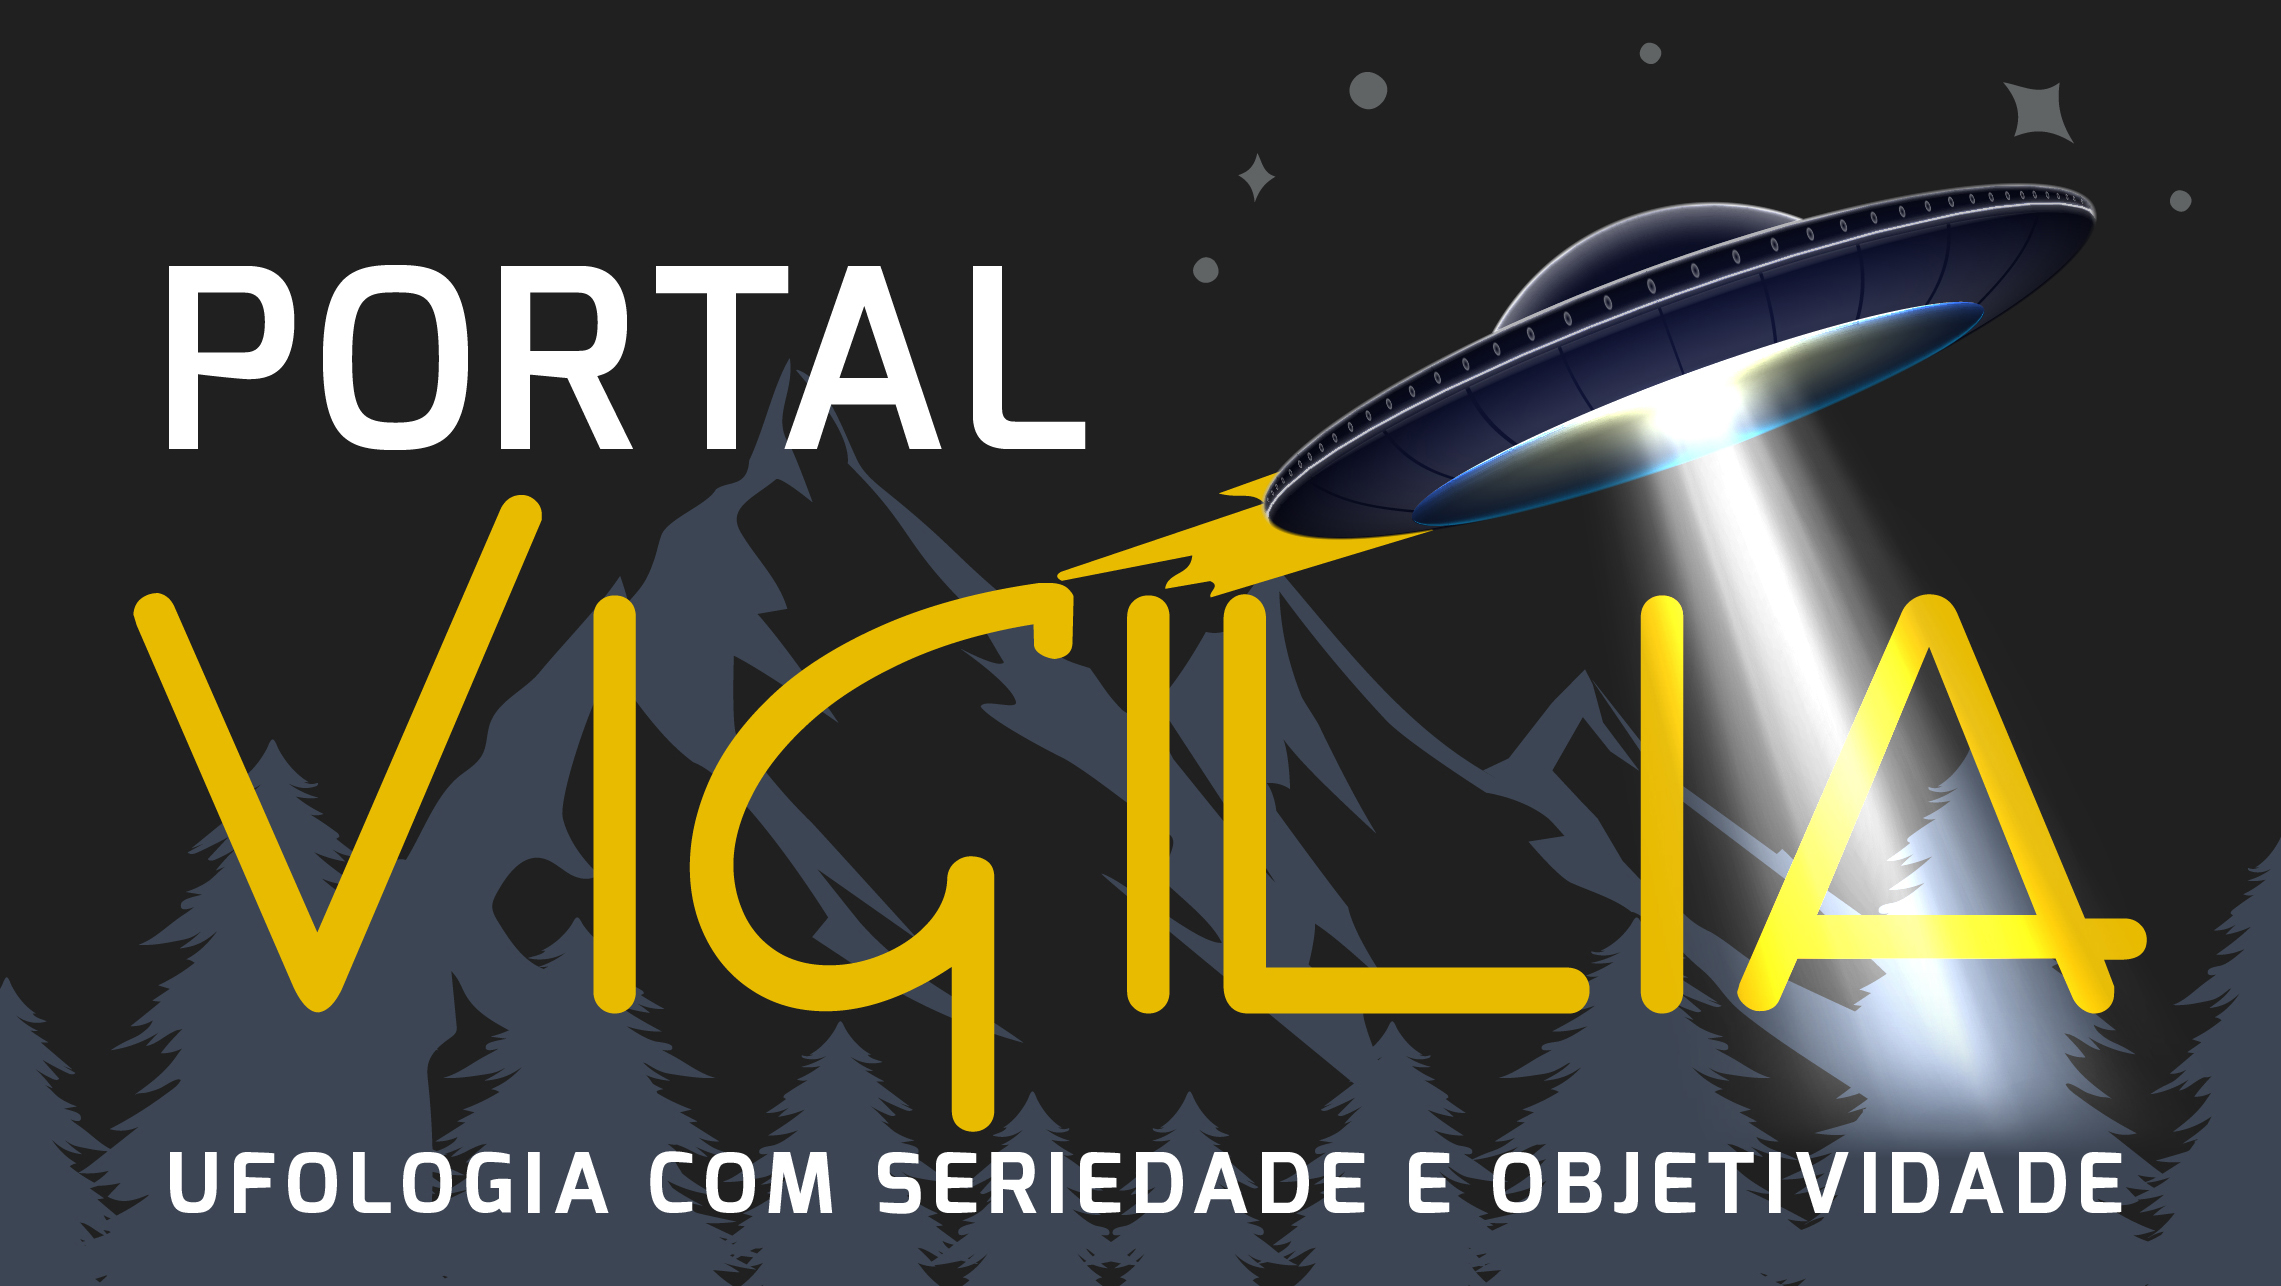 Link para o Portal Vigília - UFOs, OVNIs & Extraterrestres